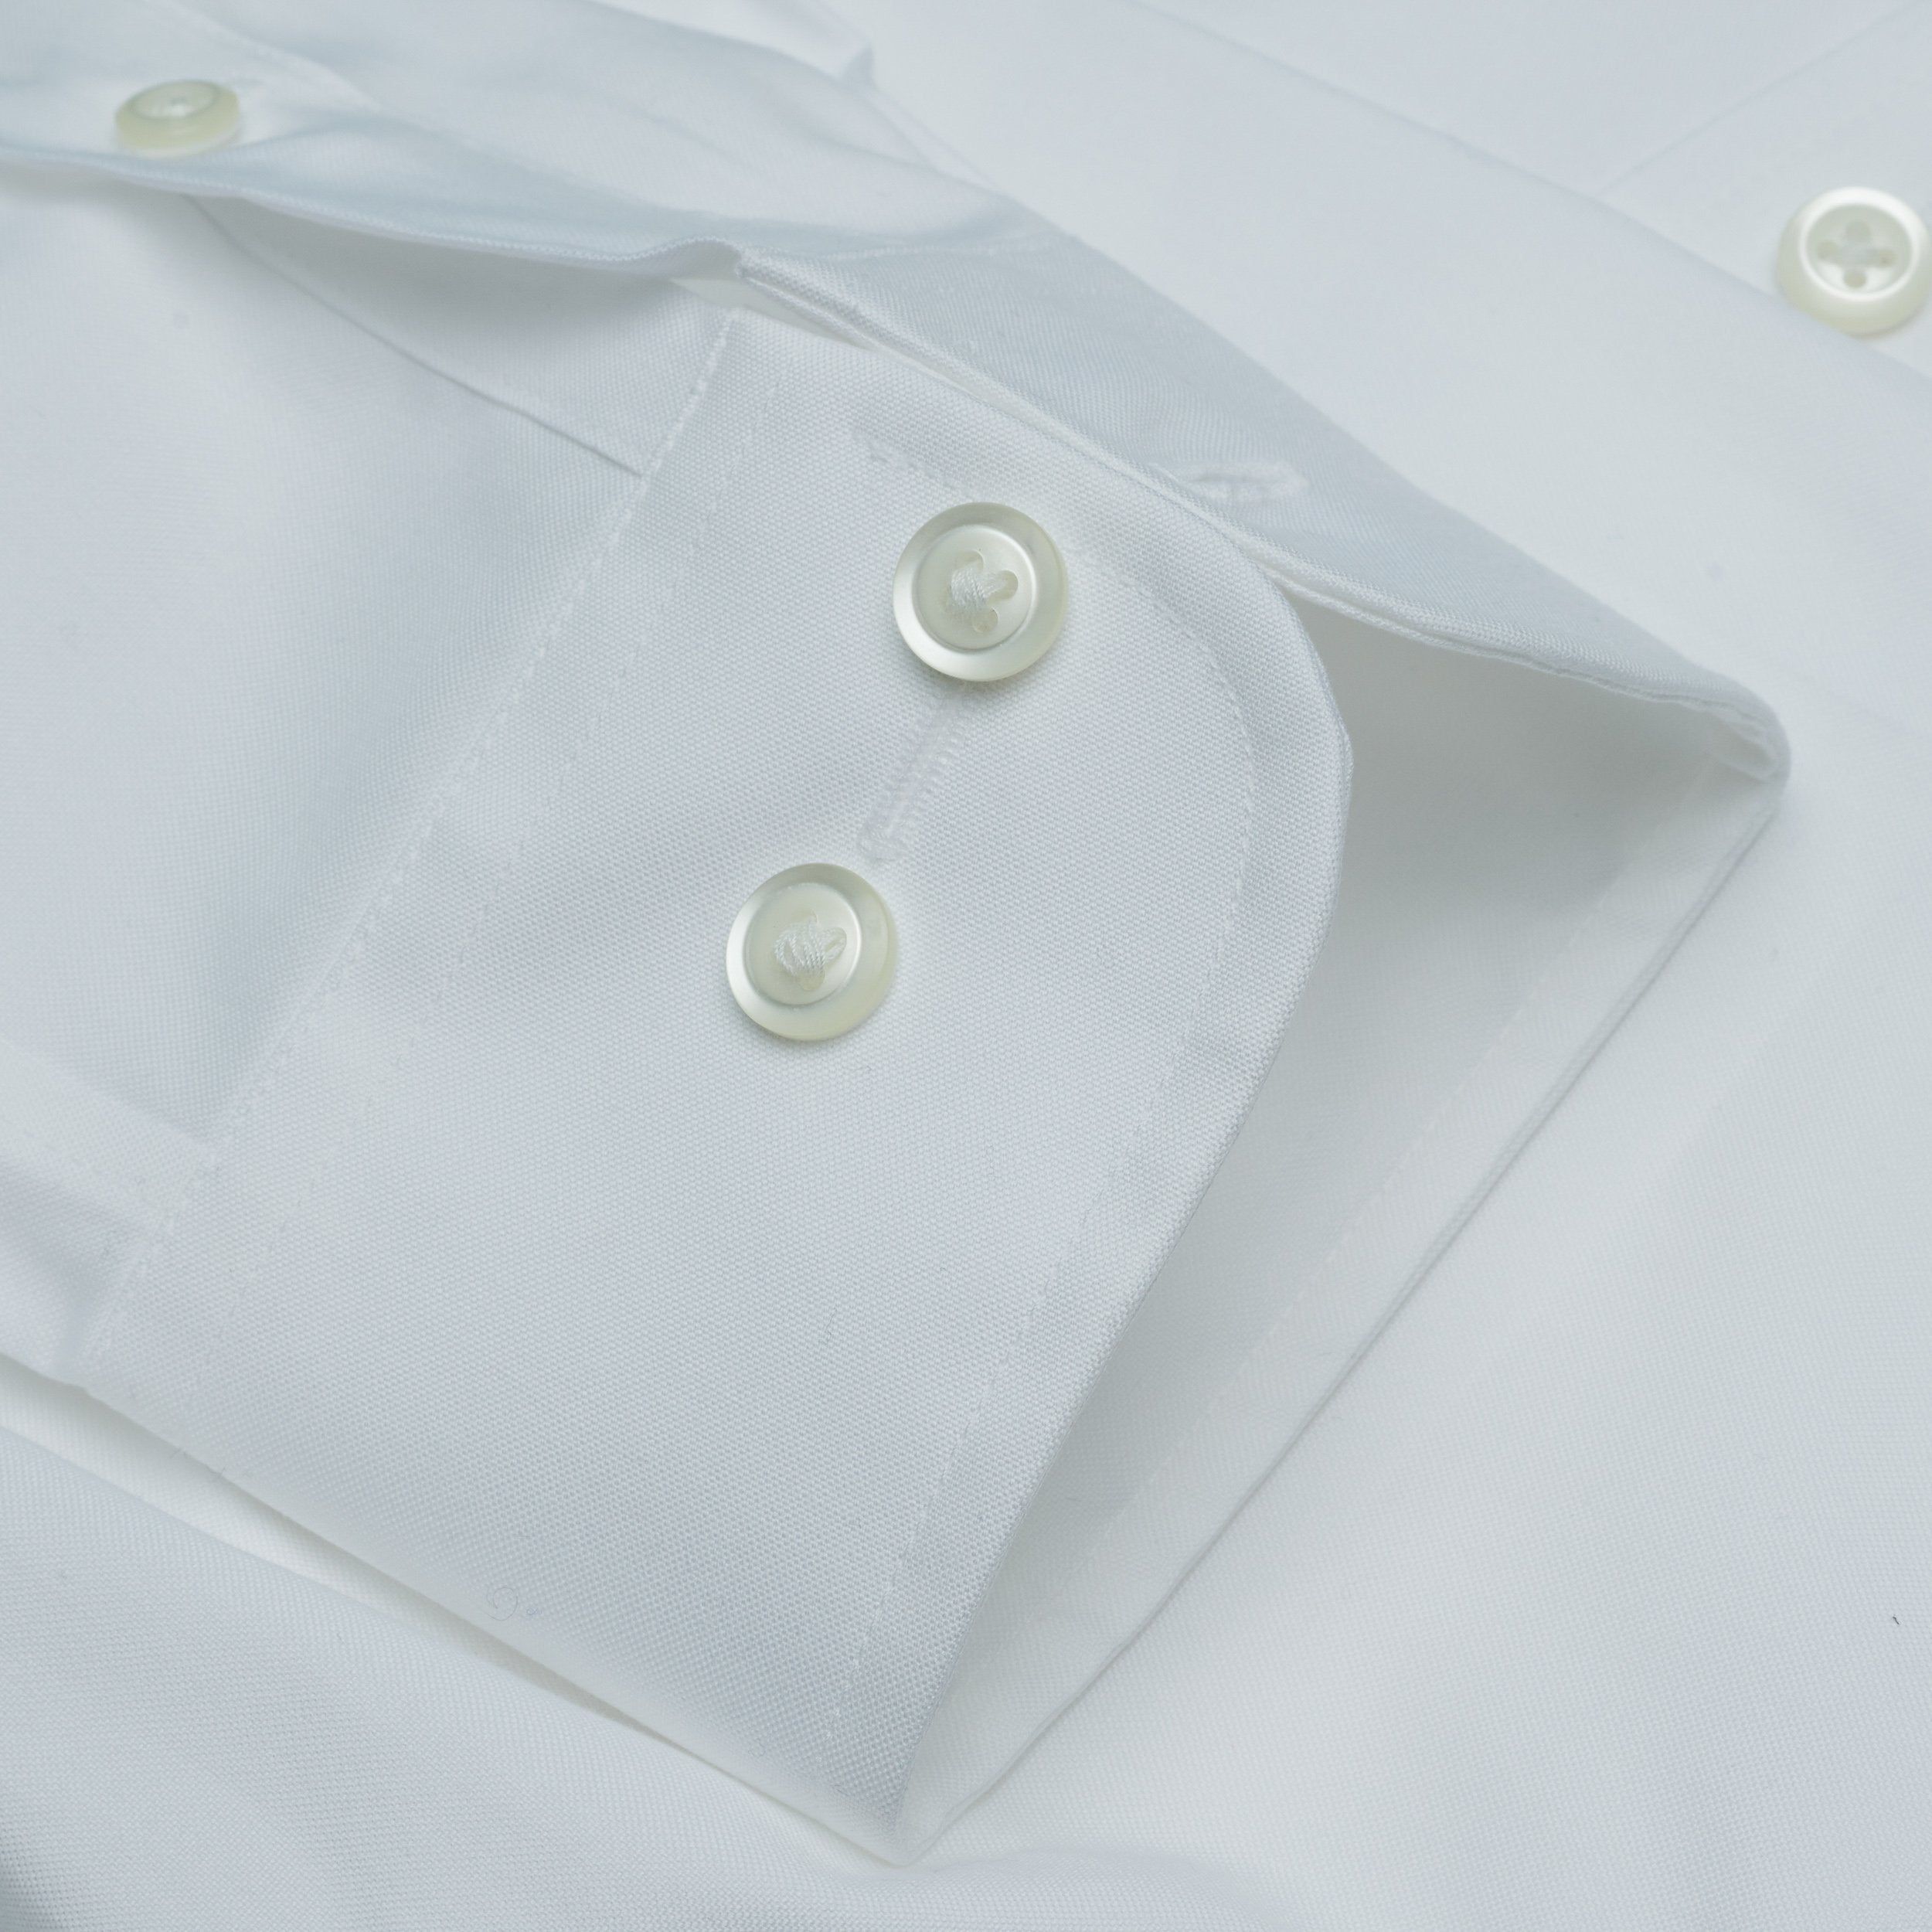 001 - White BD Dress Shirt Best Dress Shirt 